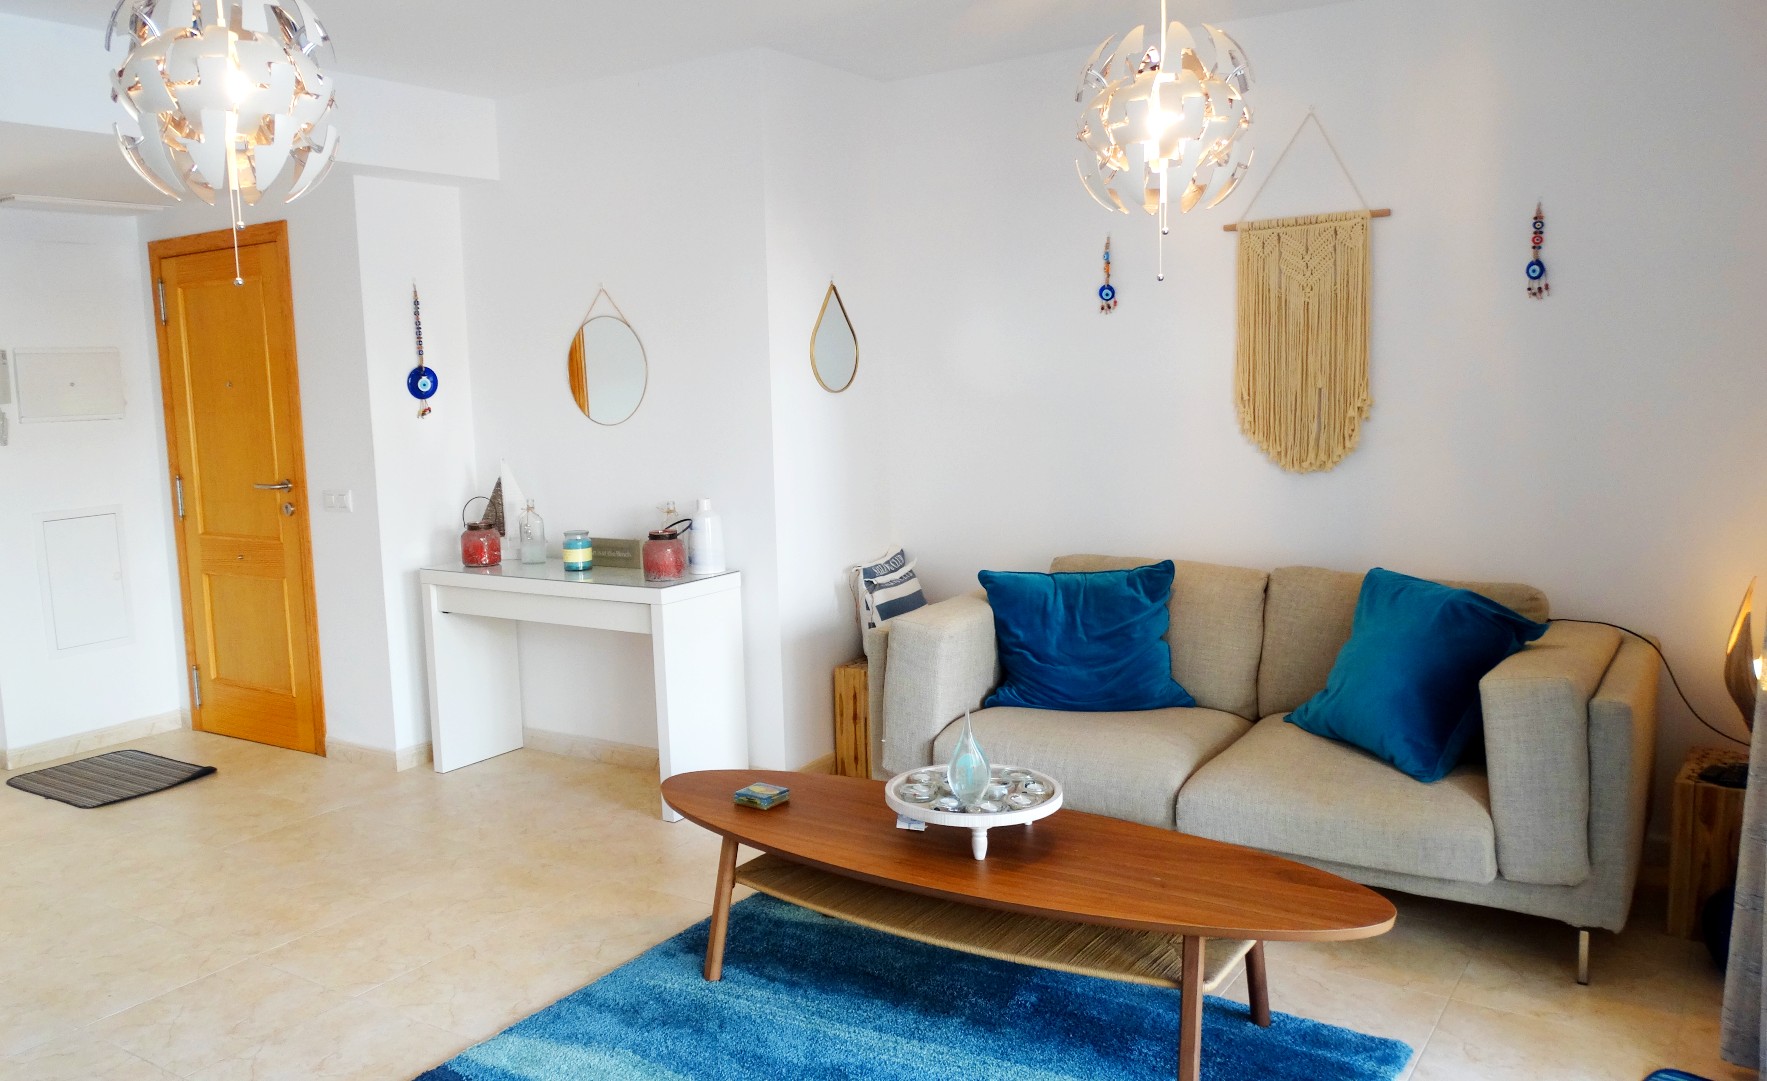 Appartement d'investissement de 3 chambres au rez-de-chaussée, à 5 minutes à pied de la plage de l'Arenal